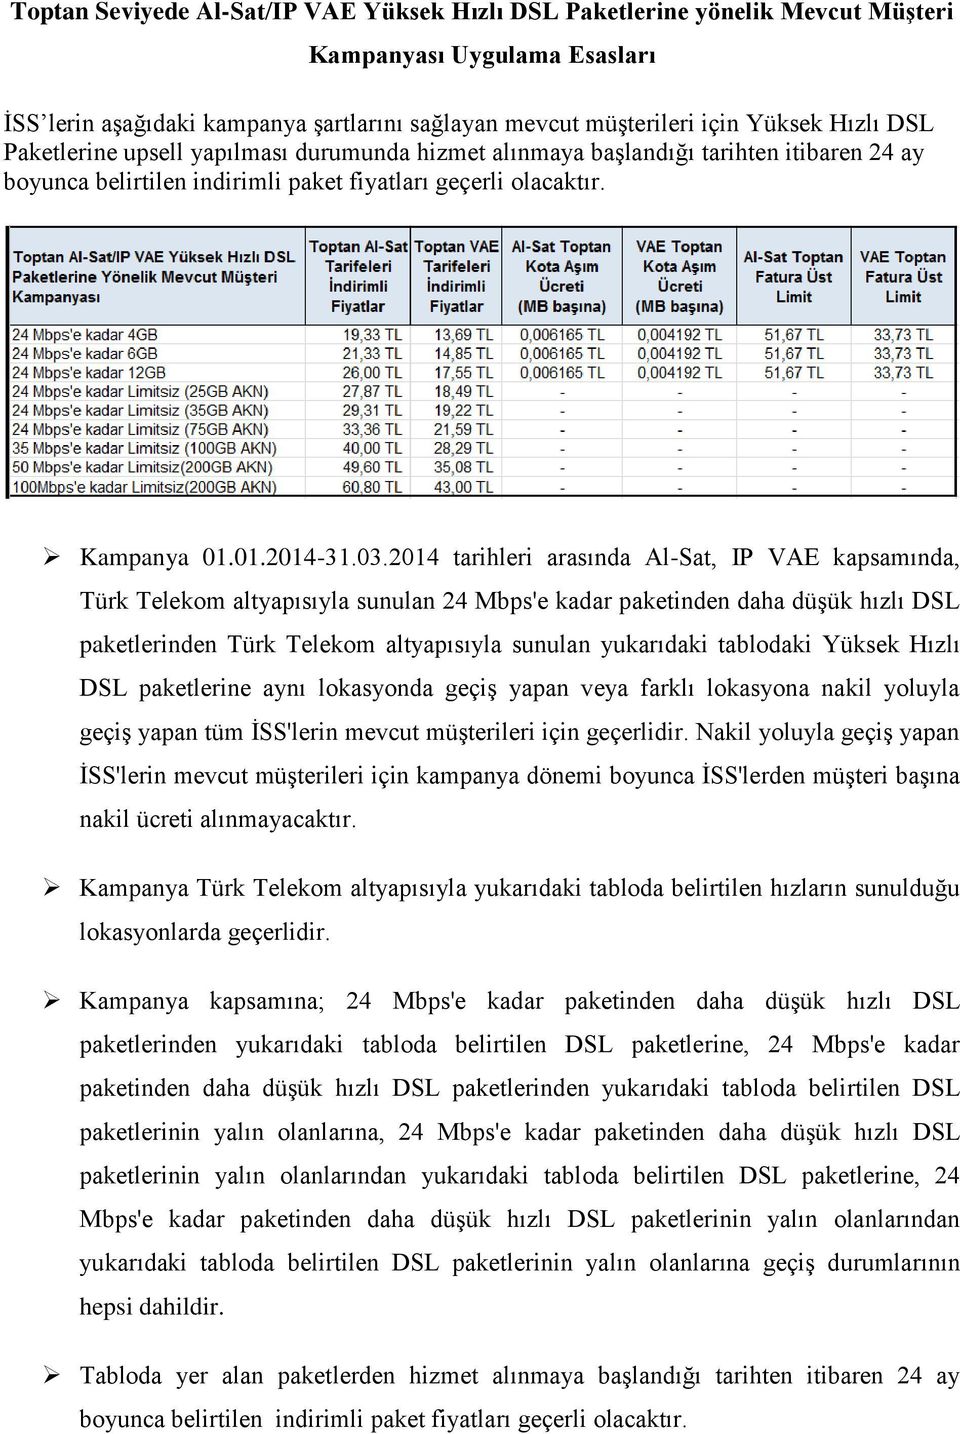 2014 tarihleri arasında Al-Sat, IP VAE kapsamında, Türk Telekom altyapısıyla sunulan 24 Mbps'e kadar paketinden daha düşük hızlı DSL paketlerinden Türk Telekom altyapısıyla sunulan yukarıdaki